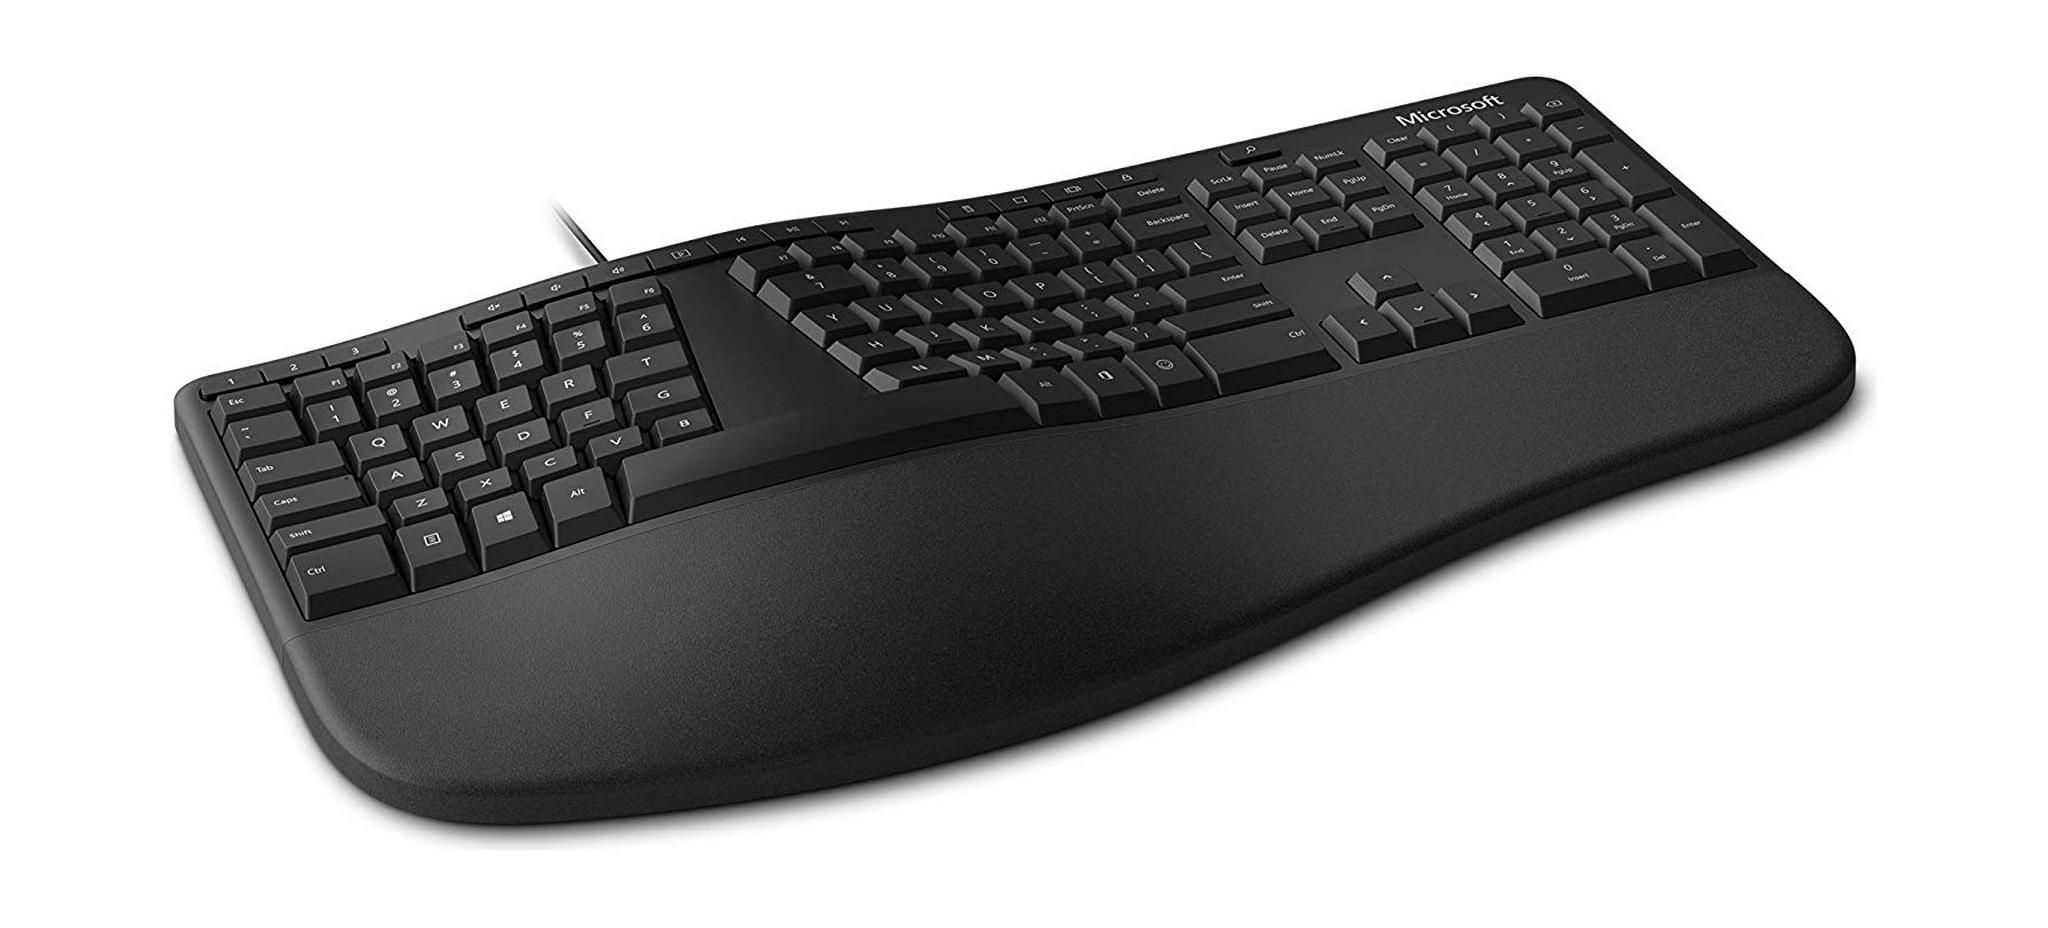 لوحة مفاتيح السلكية المريحة من ميكروسوفت (LXM-00020) - أسود